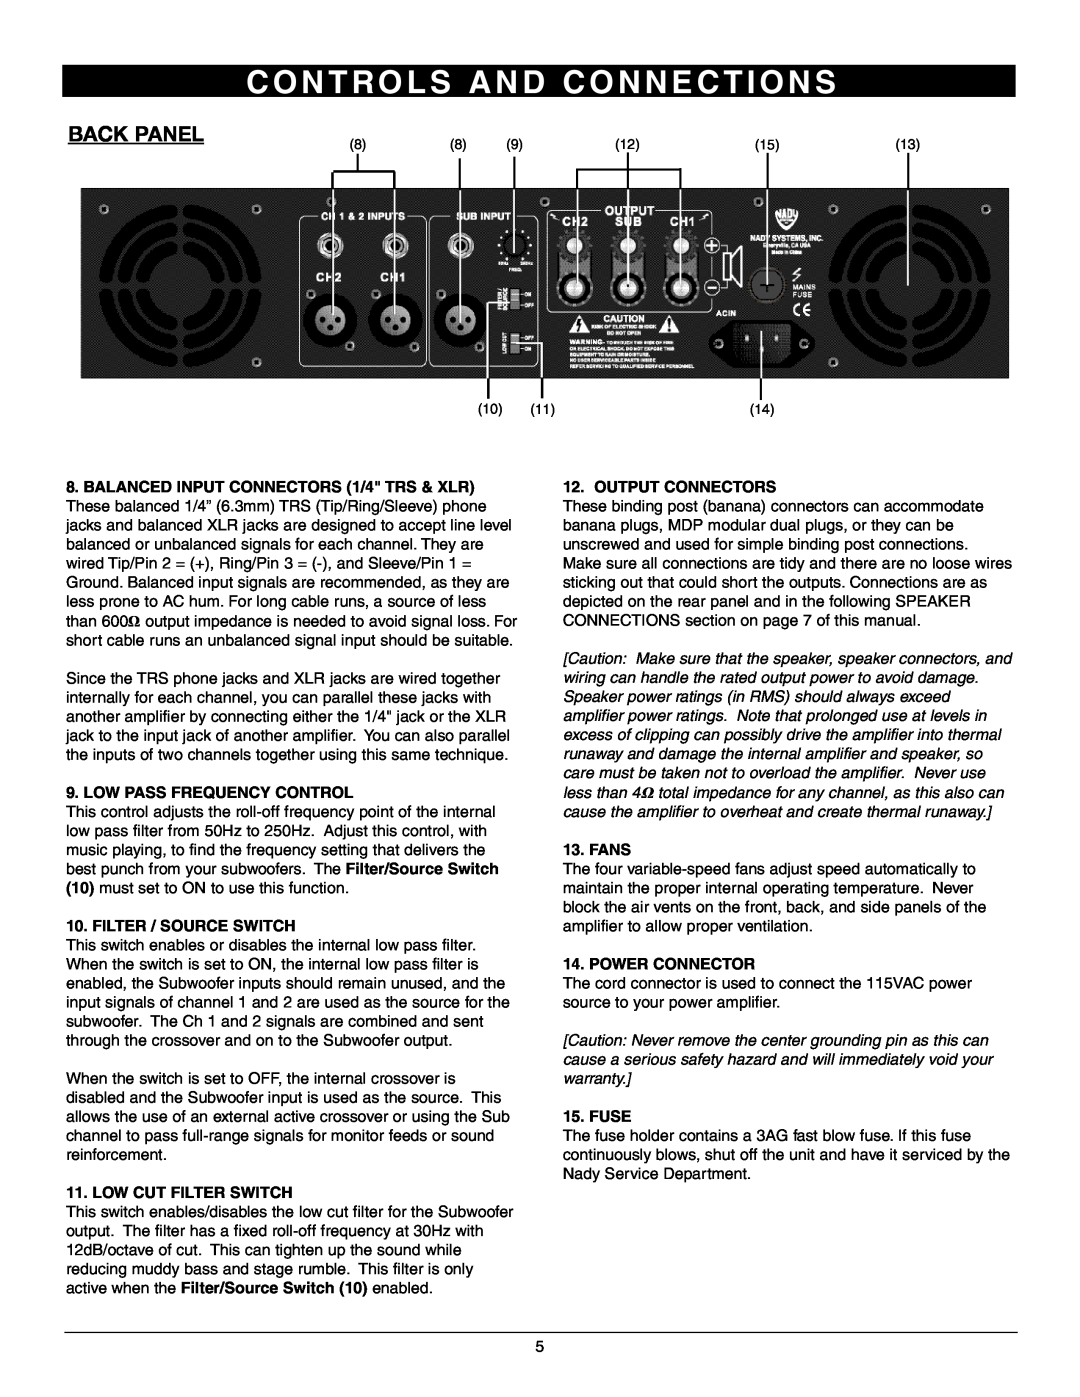 Nady Systems 3WA-1700 Back Panel, C O N T R O L S A N D C O N N E C T I O N S, Low Pass Frequency Control, Fans, Fuse 